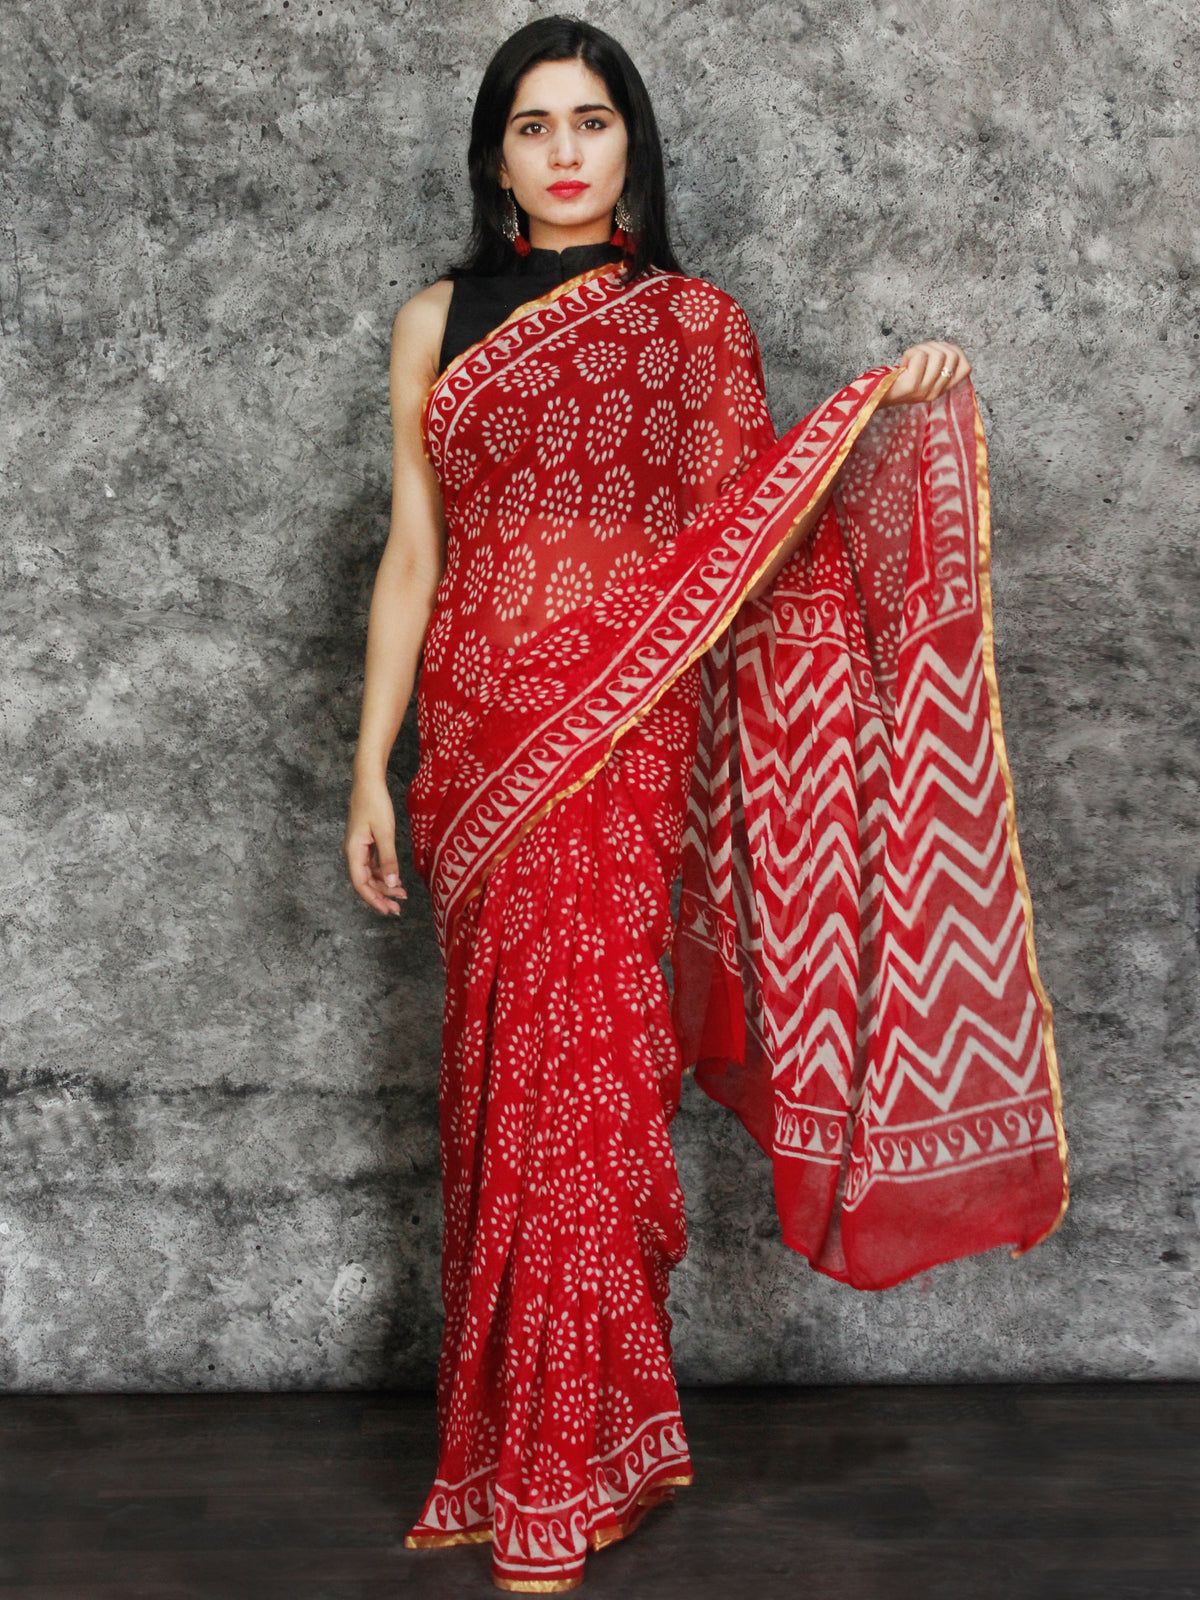 Red White Hand Block Printed Chiffon Saree with Zari Border - S031703117